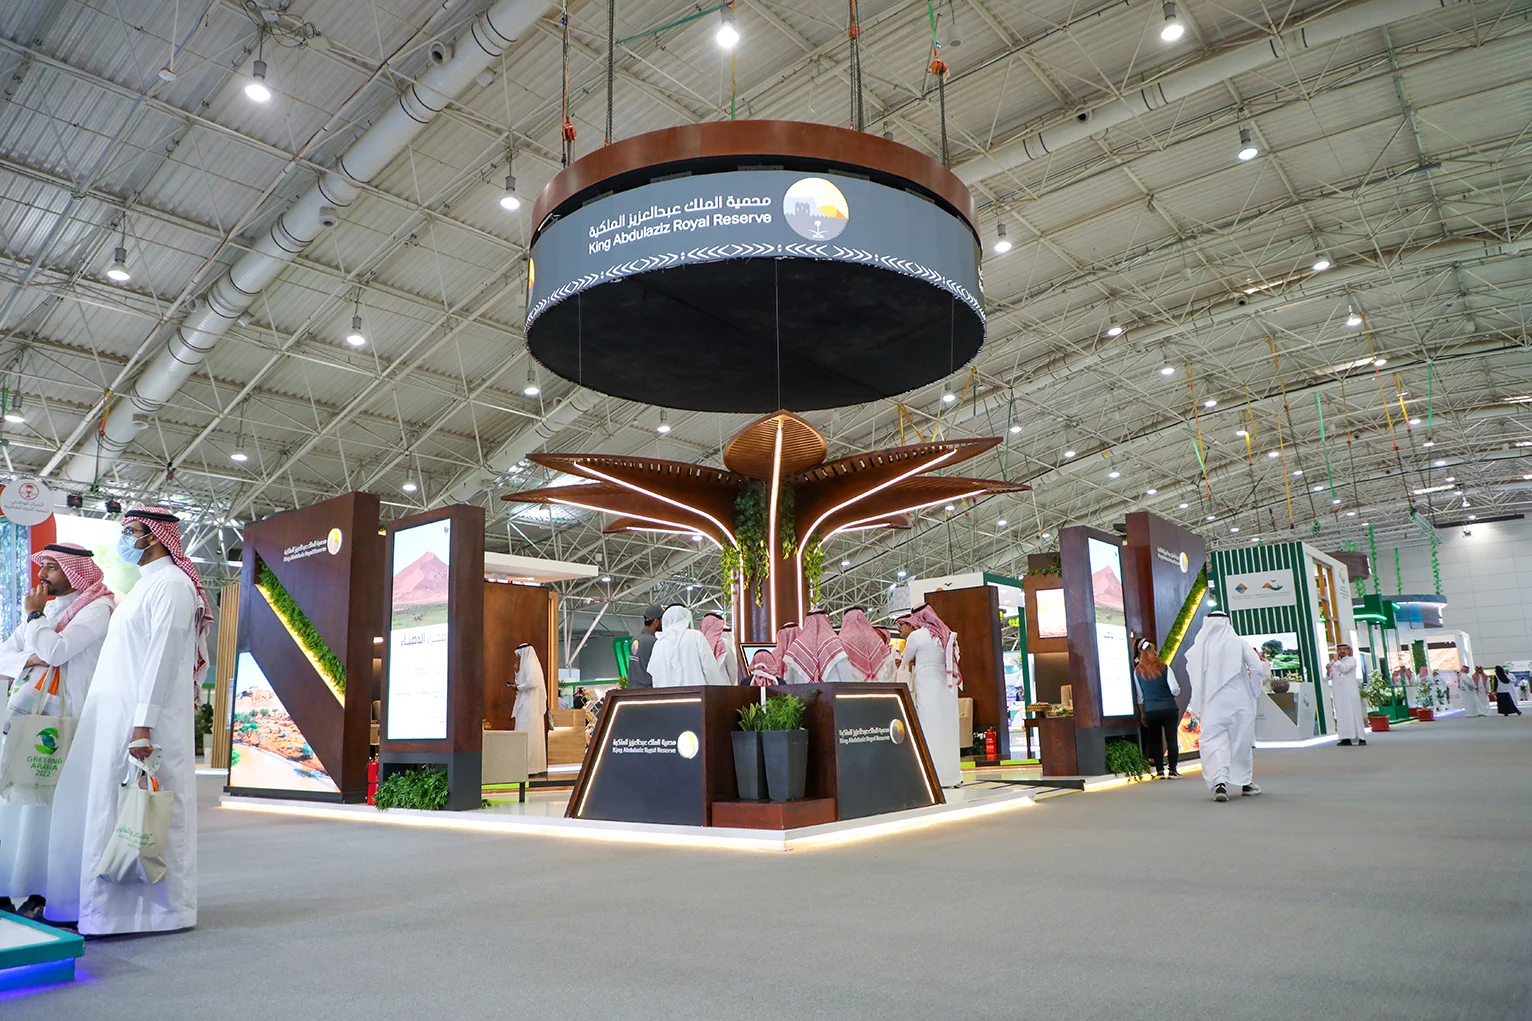 King Abdulaziz Royal Reserve Pavilion - Afforestation Techniques Exhibition